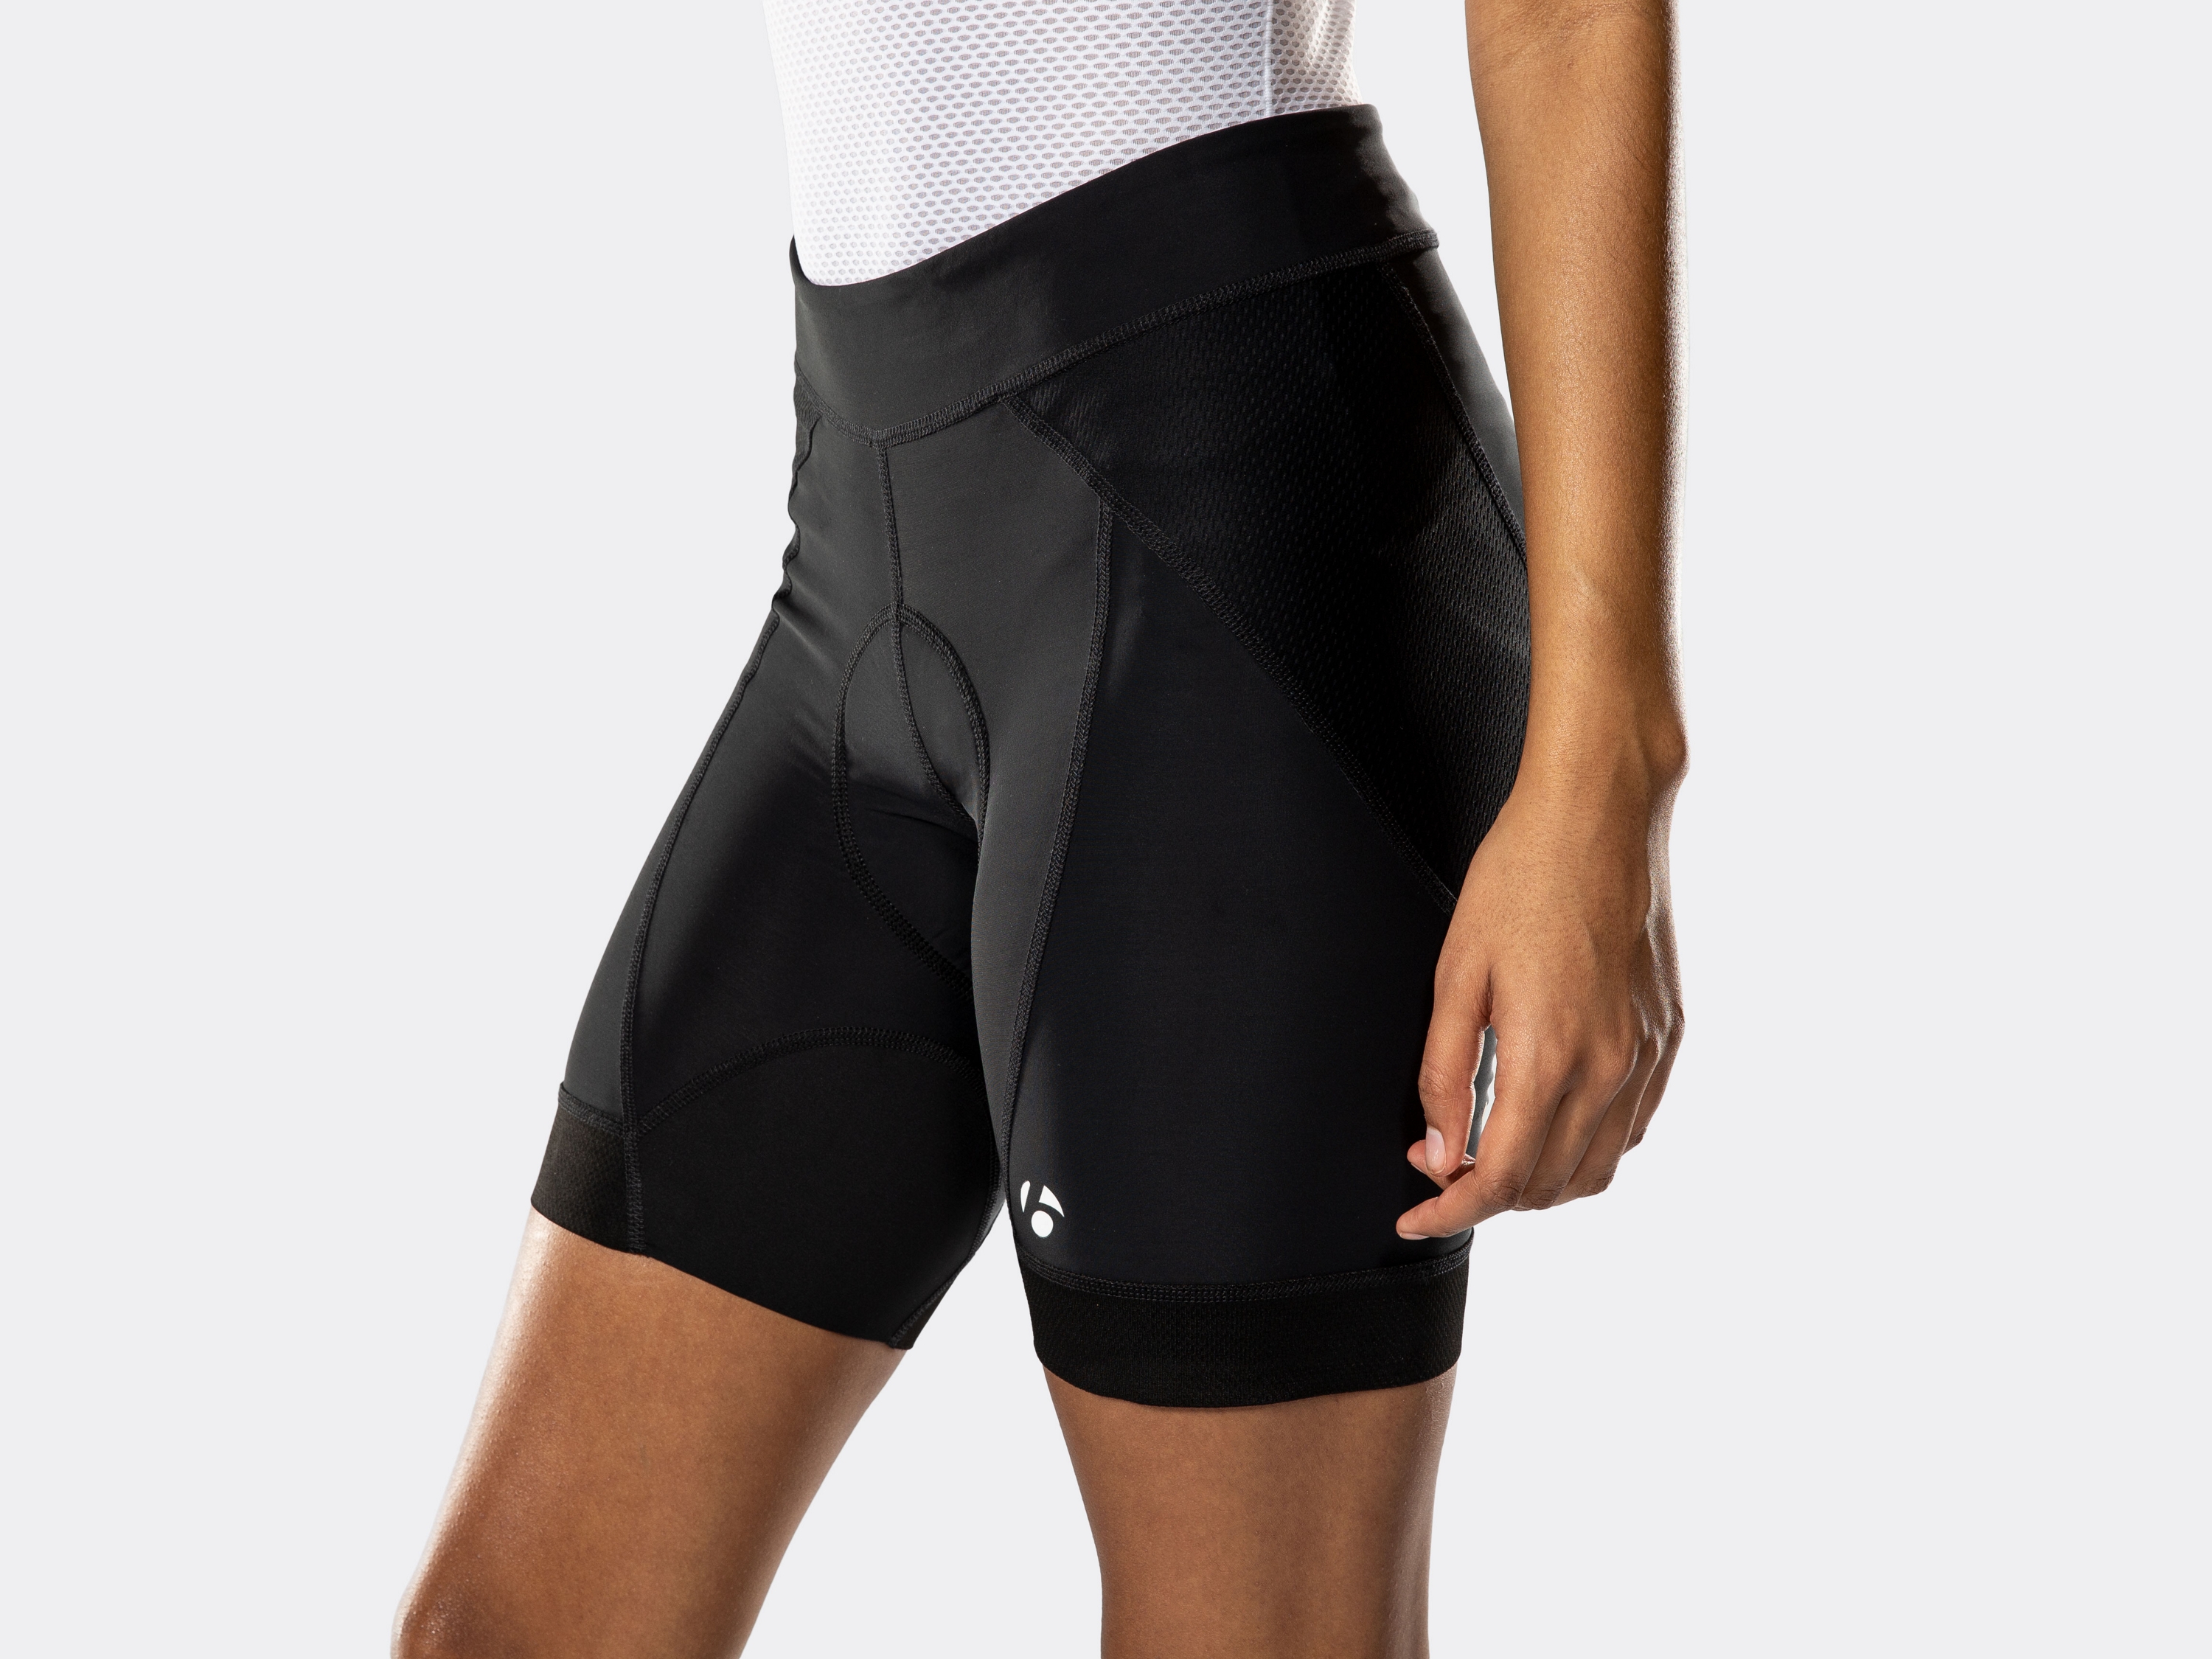 gel cycling shorts mens